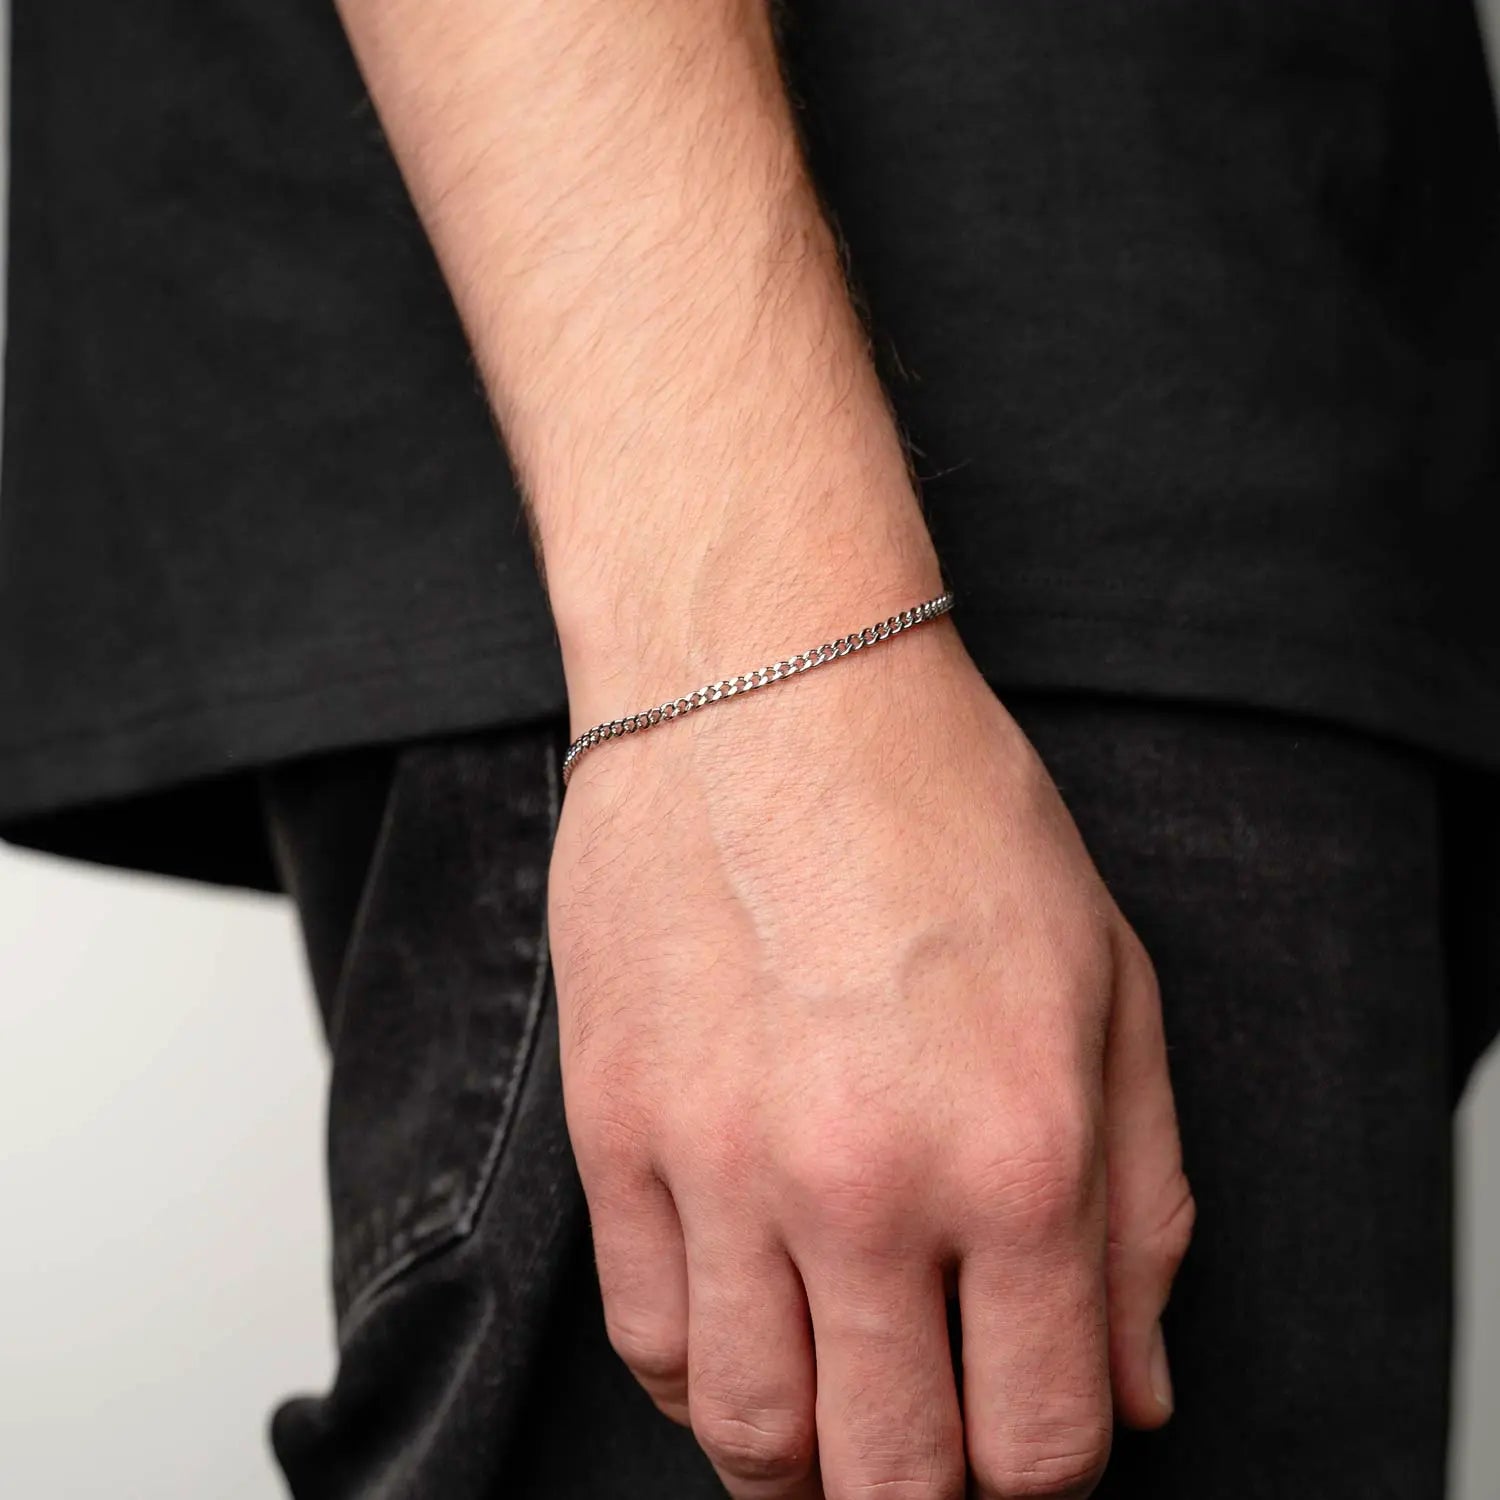 Männliche Person mit Schmuck Armband in 3mm am Handgelenk